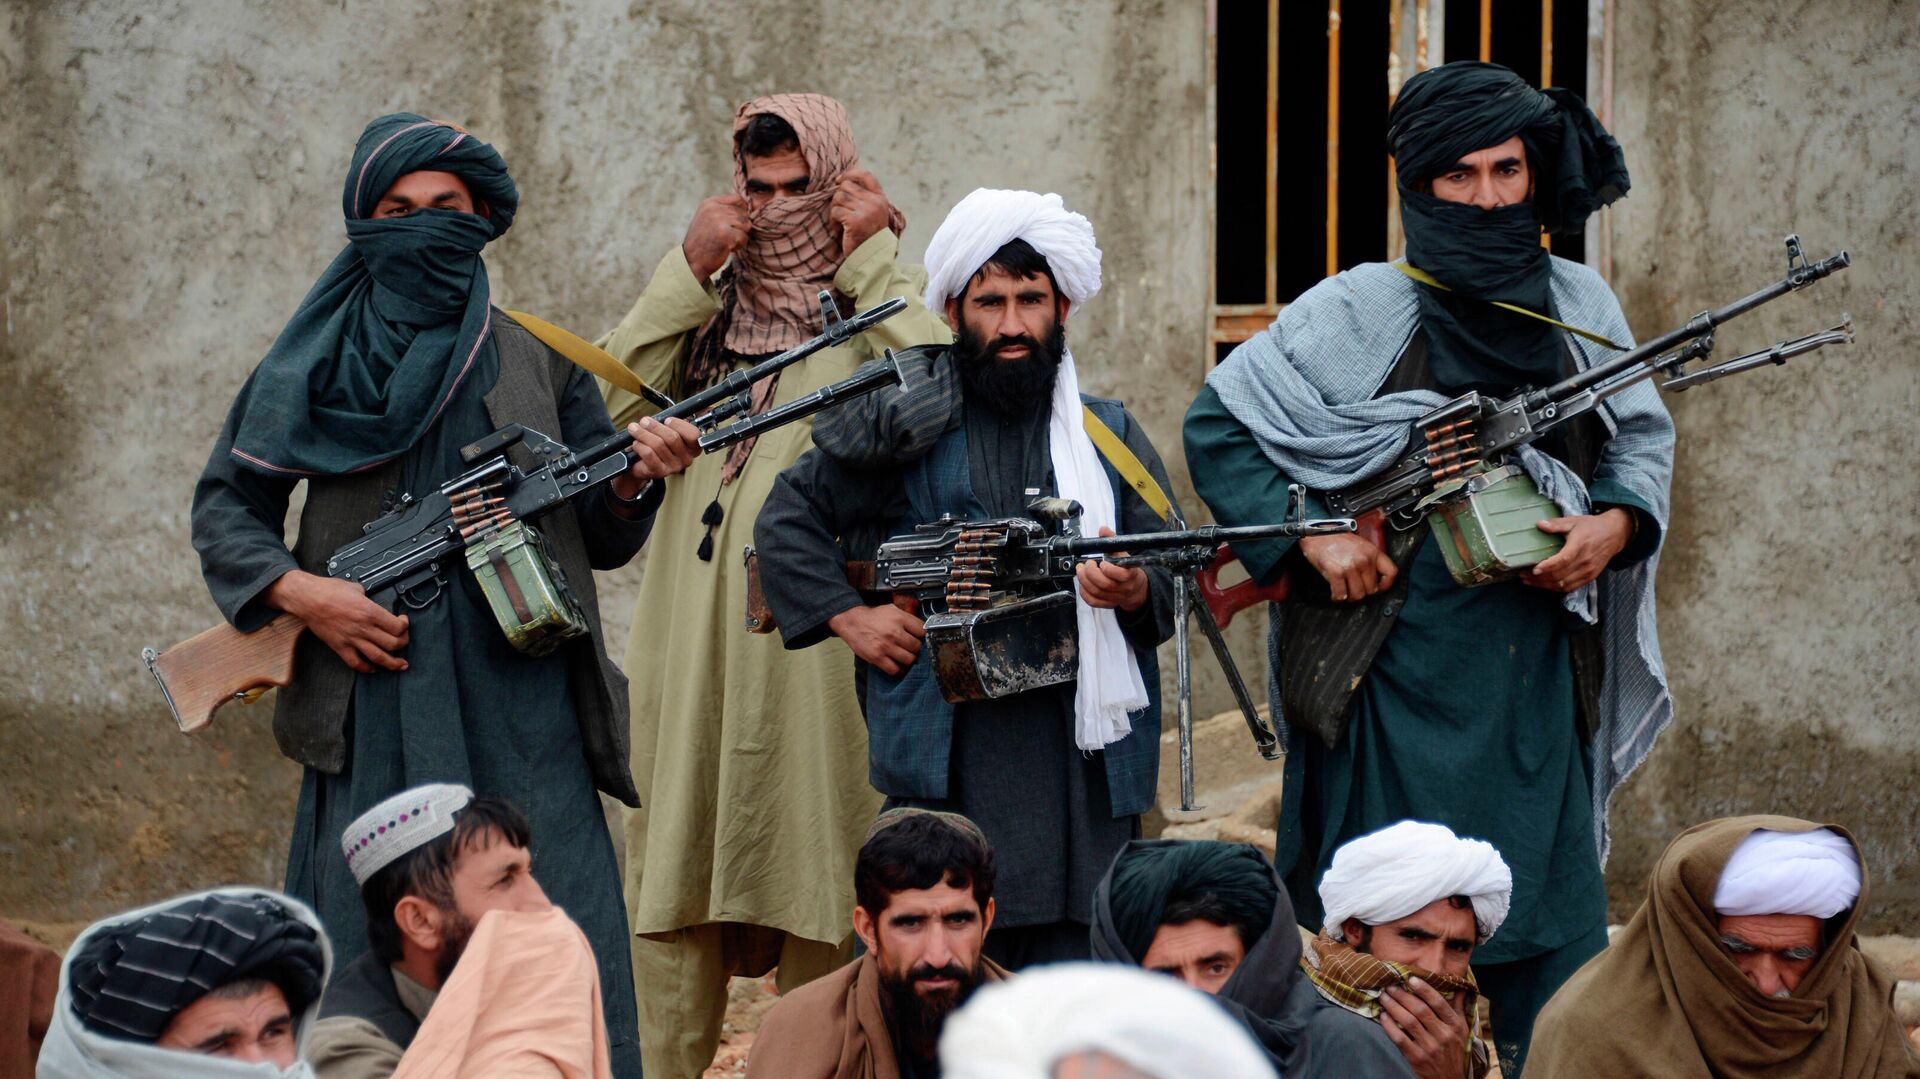 ООН: В Афганистане растет угроза терроризма